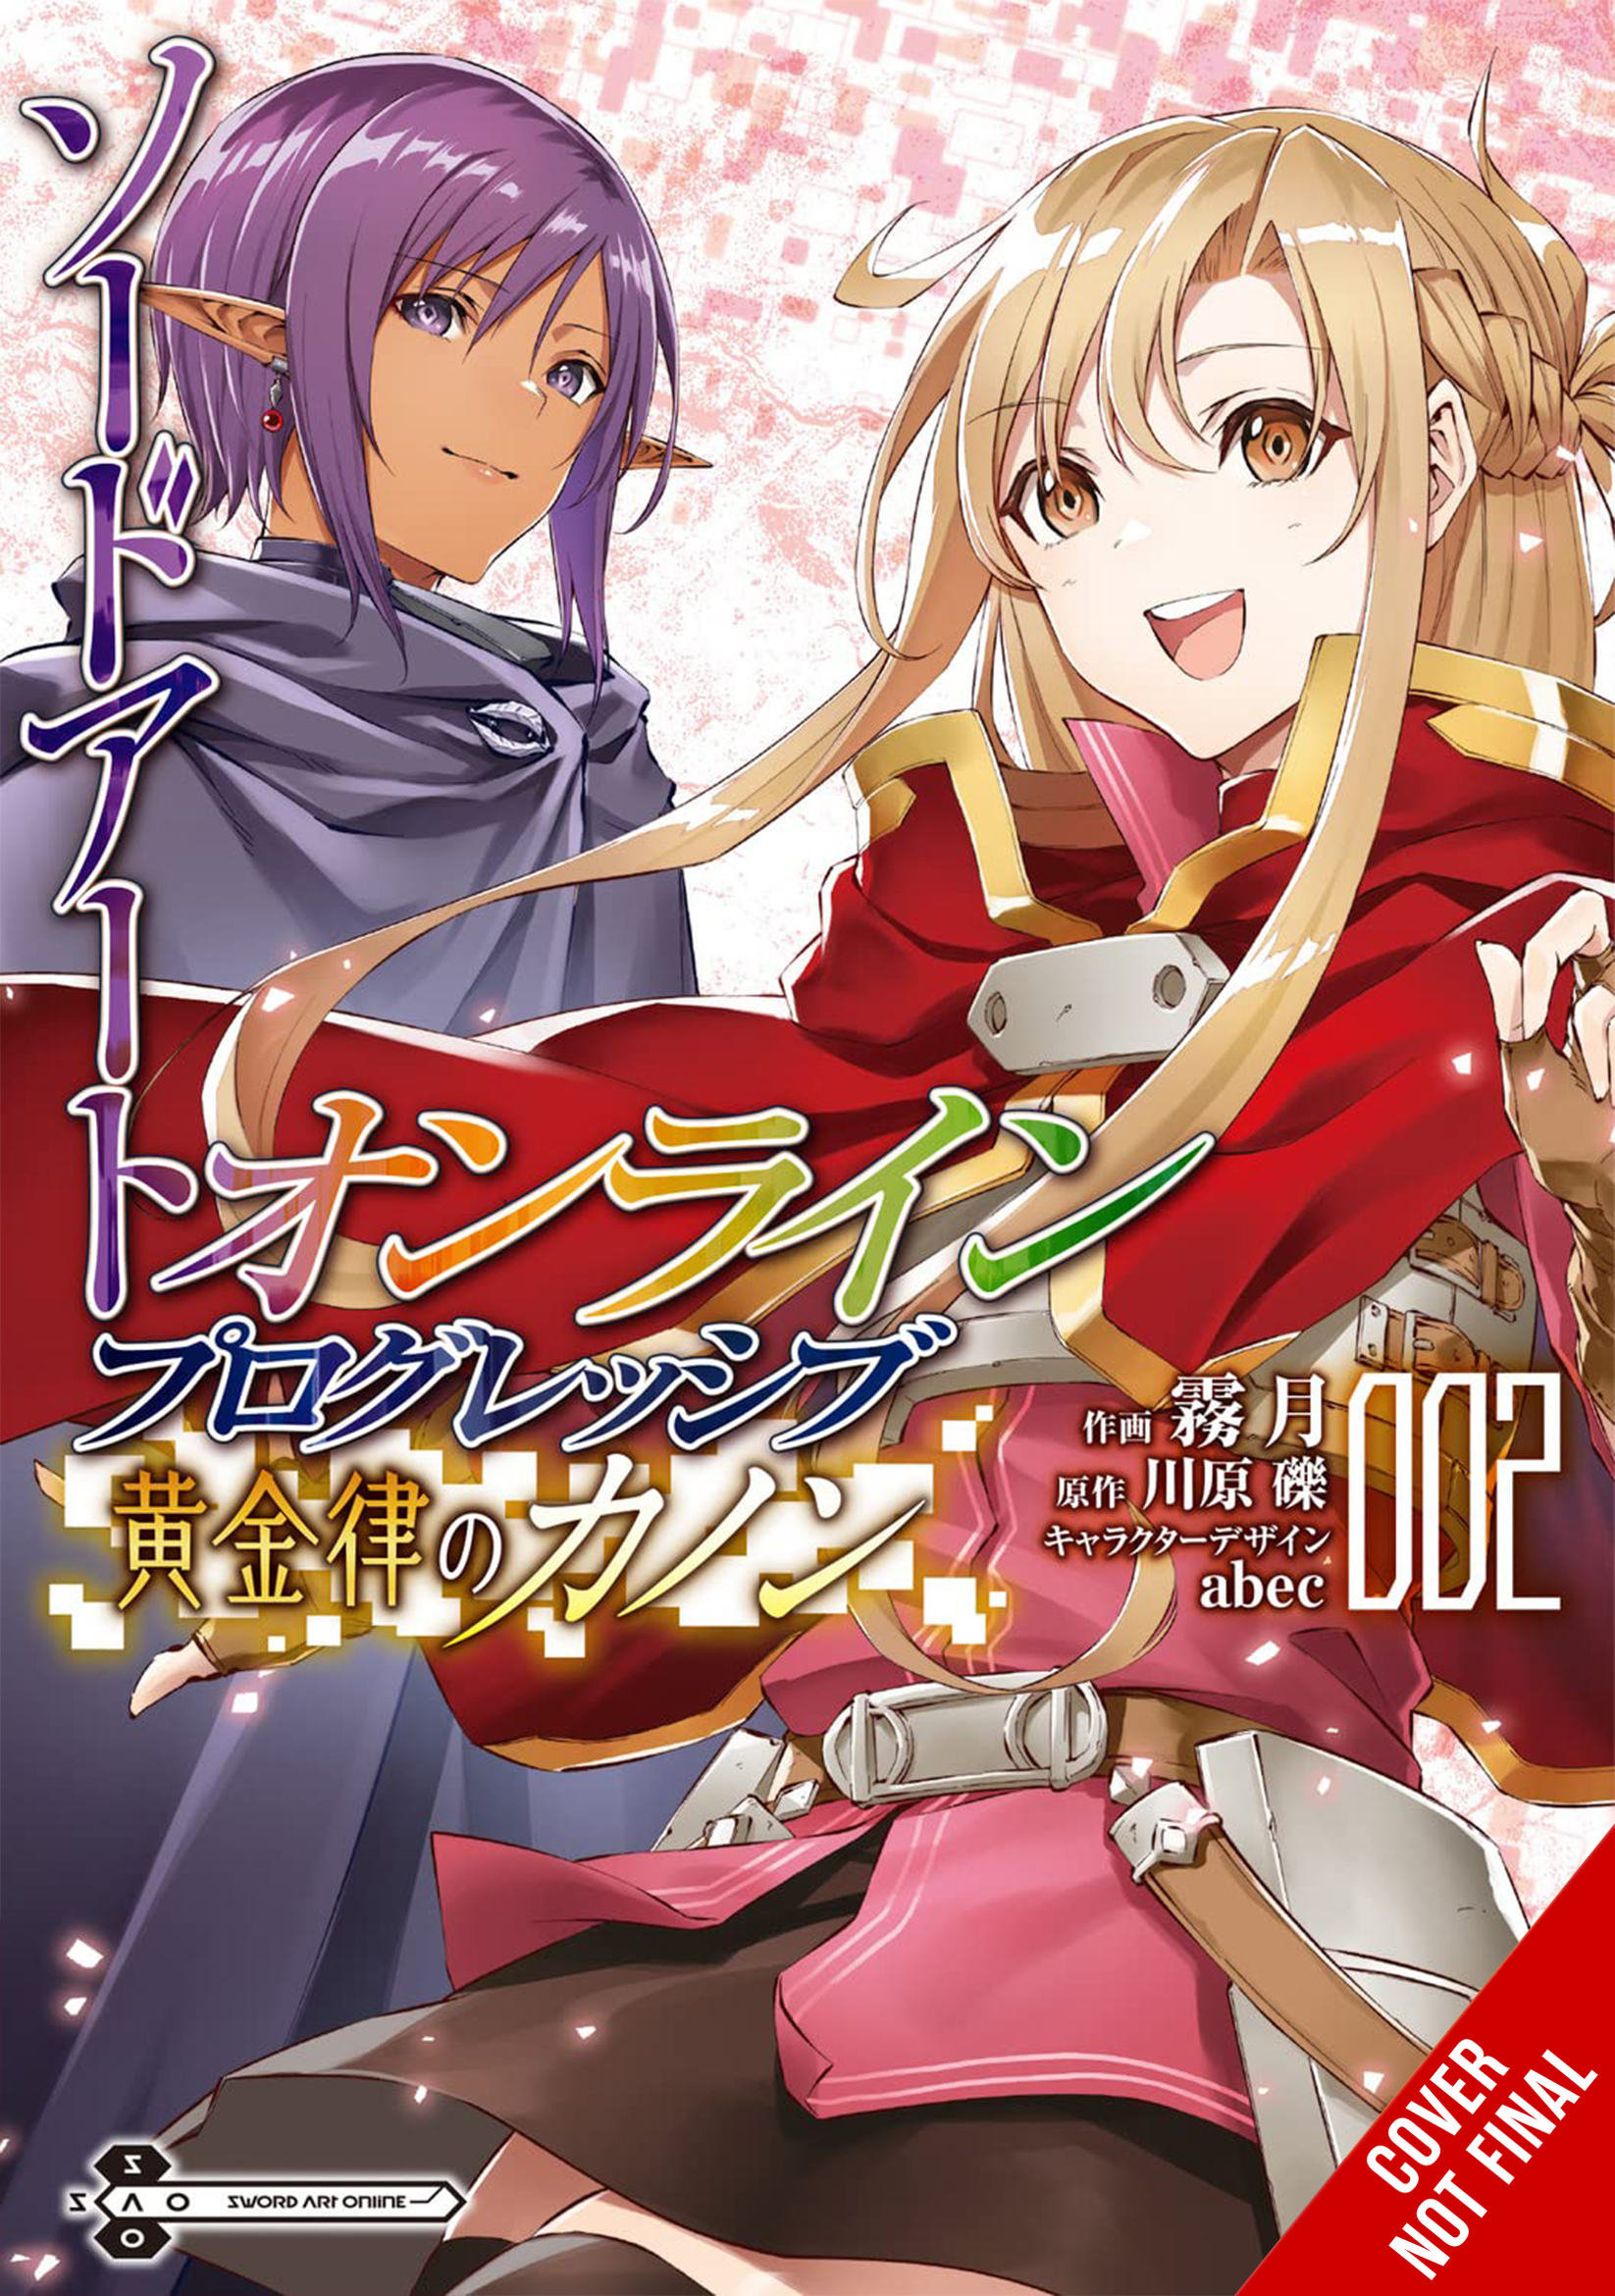 Sword Art Online: Progressive Canon of the Golden Rule Manga Volume 2